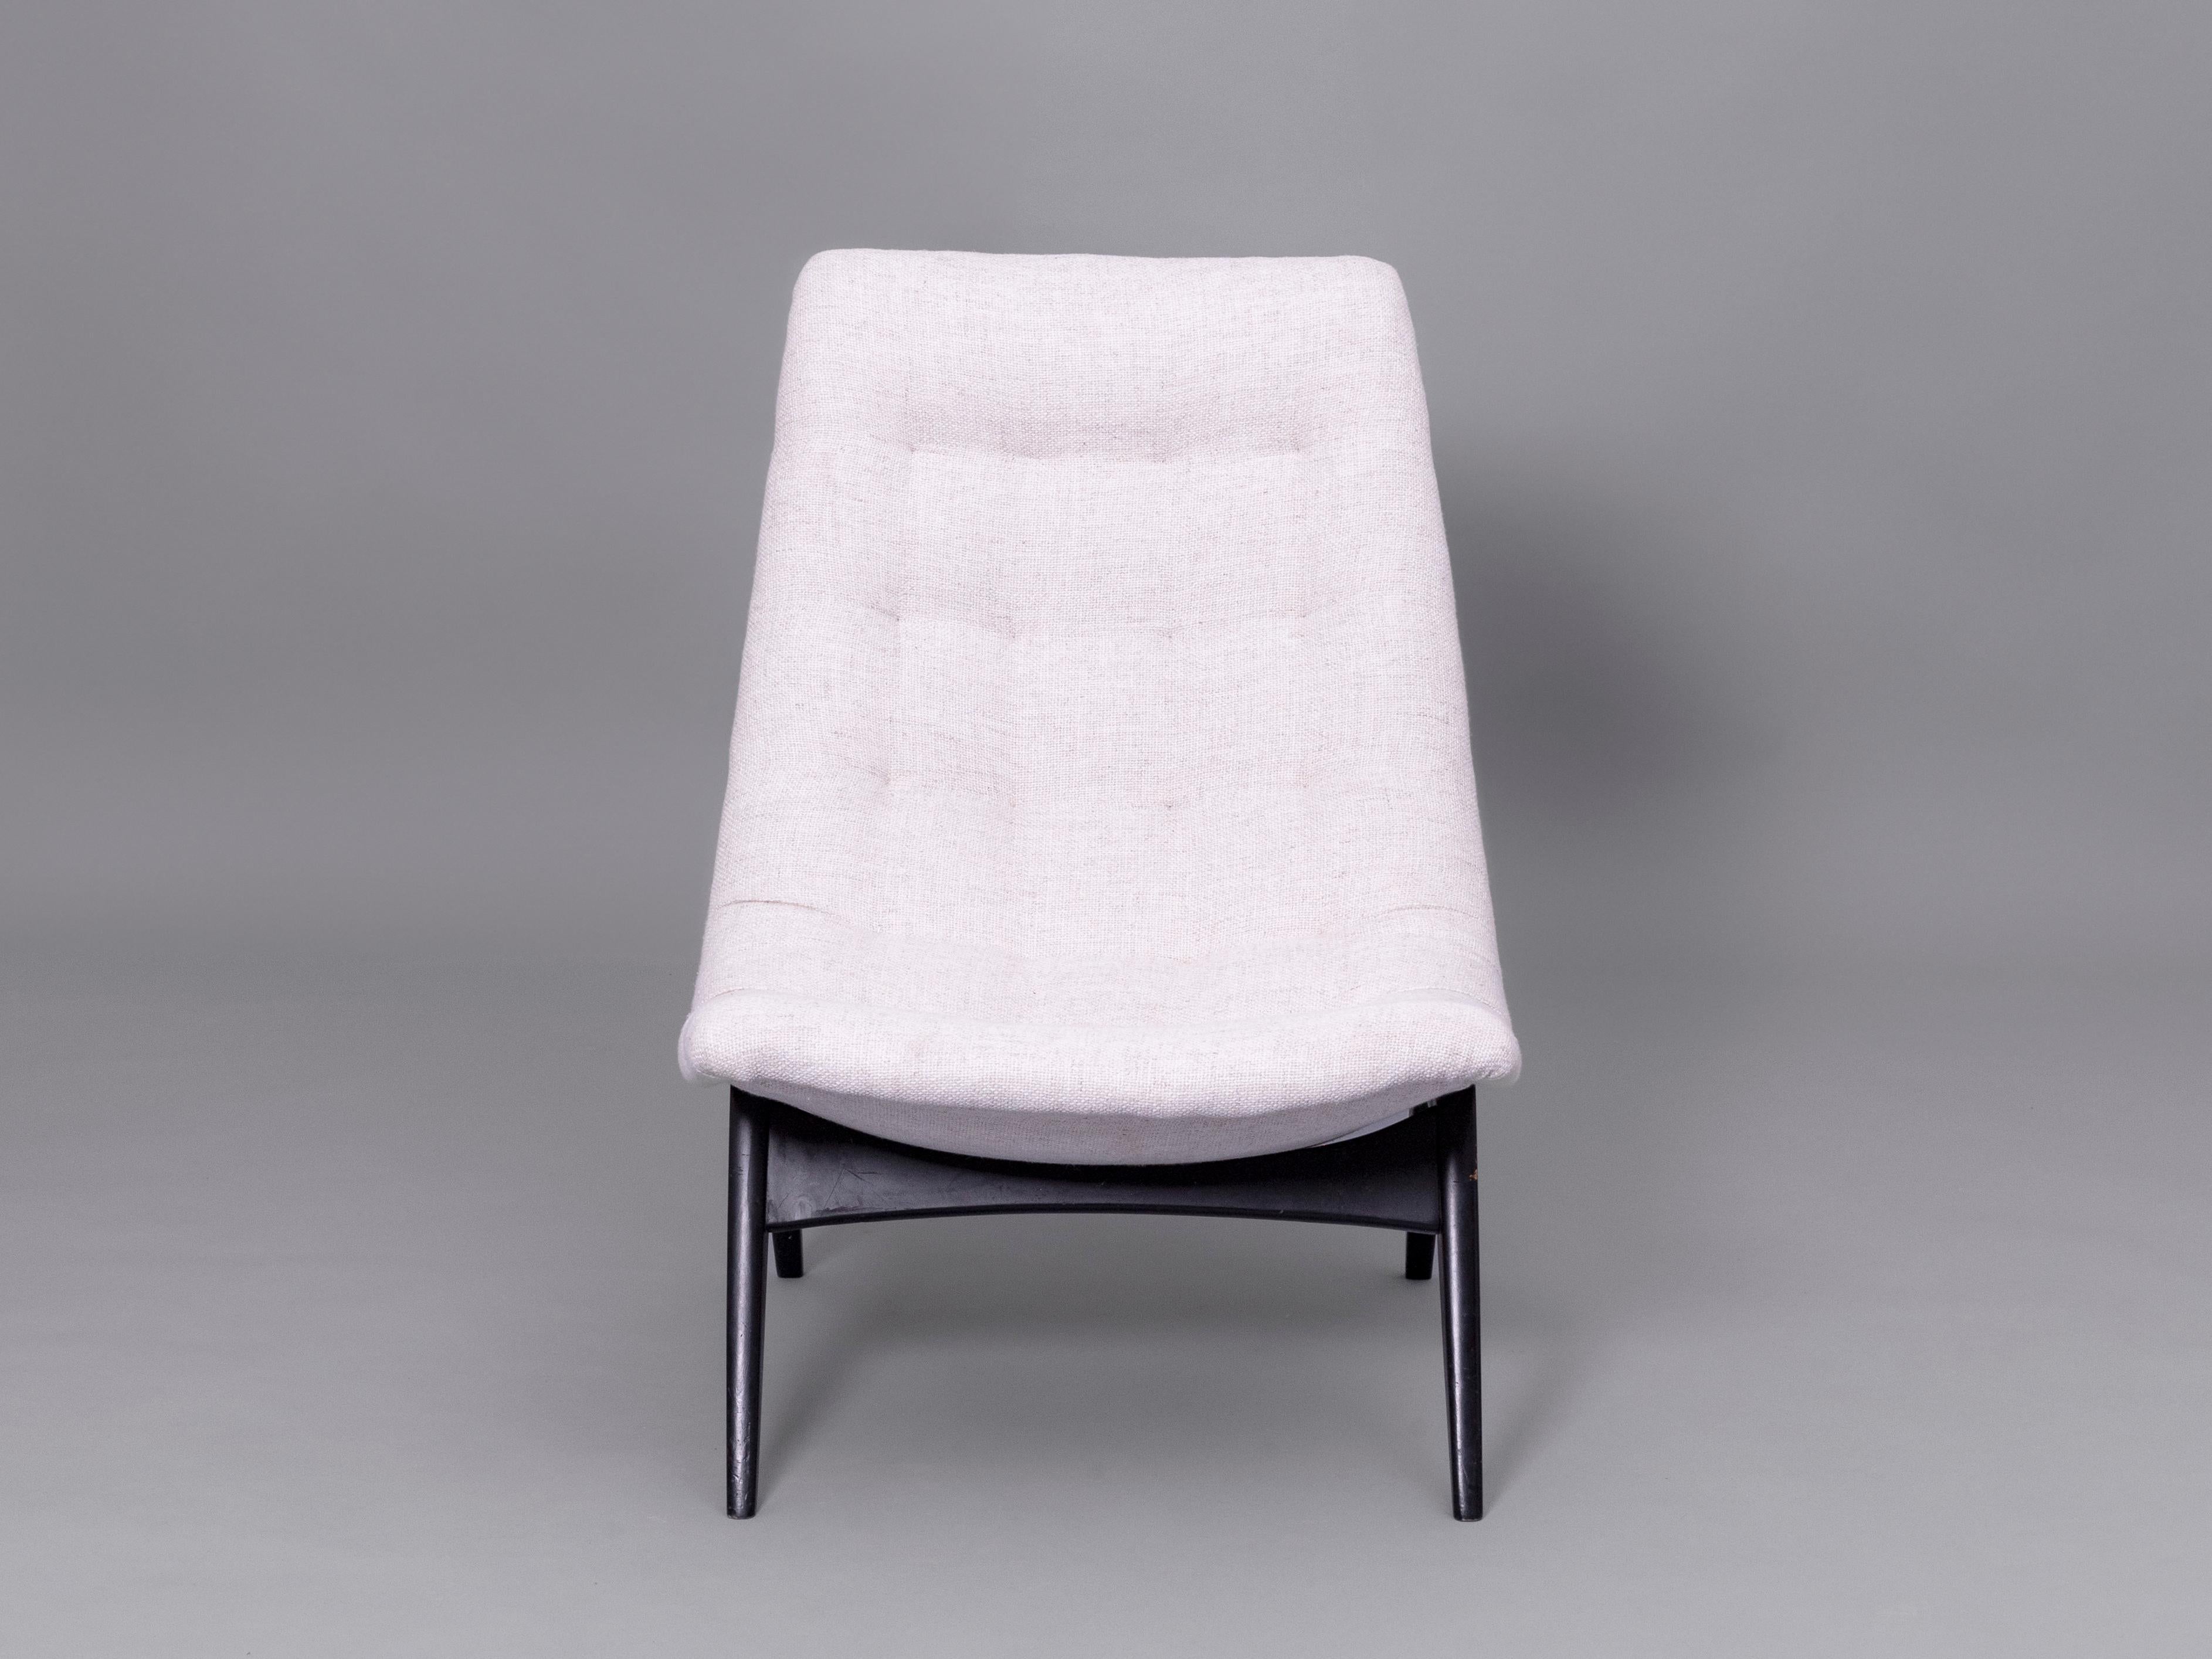 Polstermöbel und Sitz aus schwarzem Laqcuered-Holz, entworfen von Svante Skogh für Olof Perssons Fåtöljindustri, Jönköping. Schweden, 1950er Jahre

Dieses Stück wurde nach den Regeln des skandinavischen Mid-Century-Stils entworfen und zeichnet sich